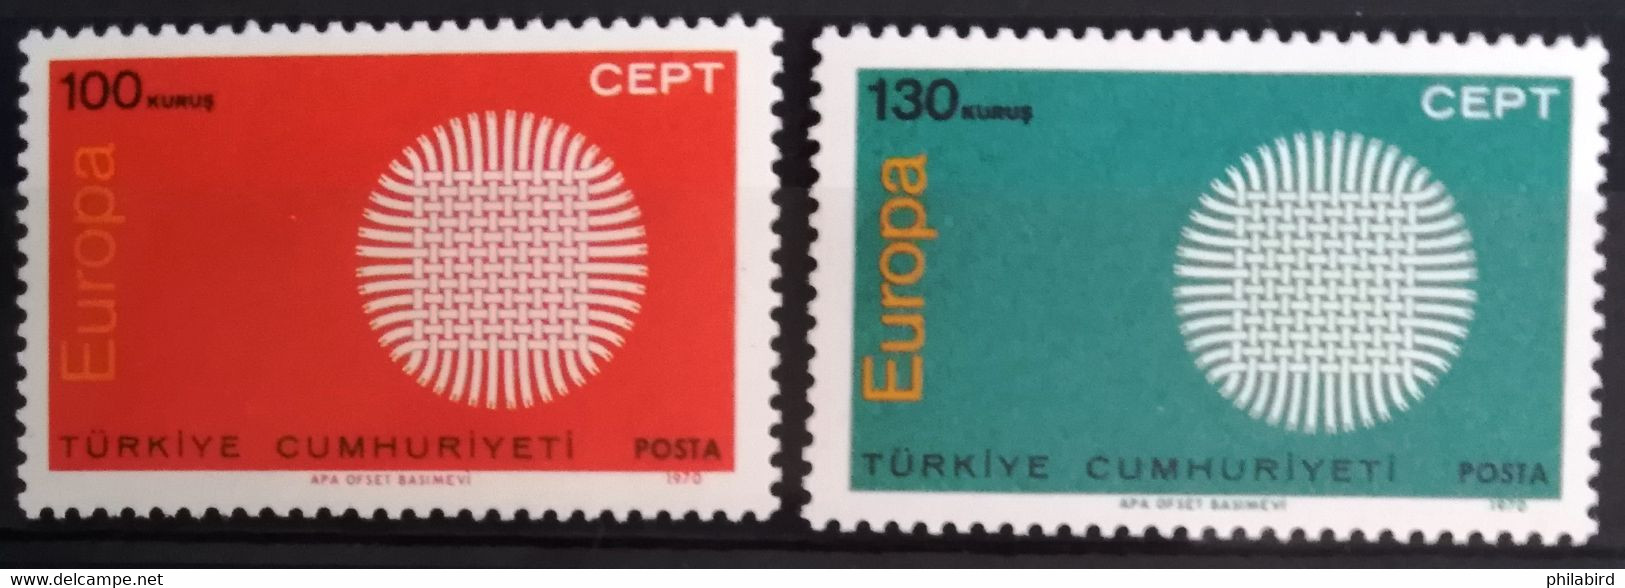 EUROPA 1970 - TURQUIE                    N° 1952/1953                      NEUF* - 1970